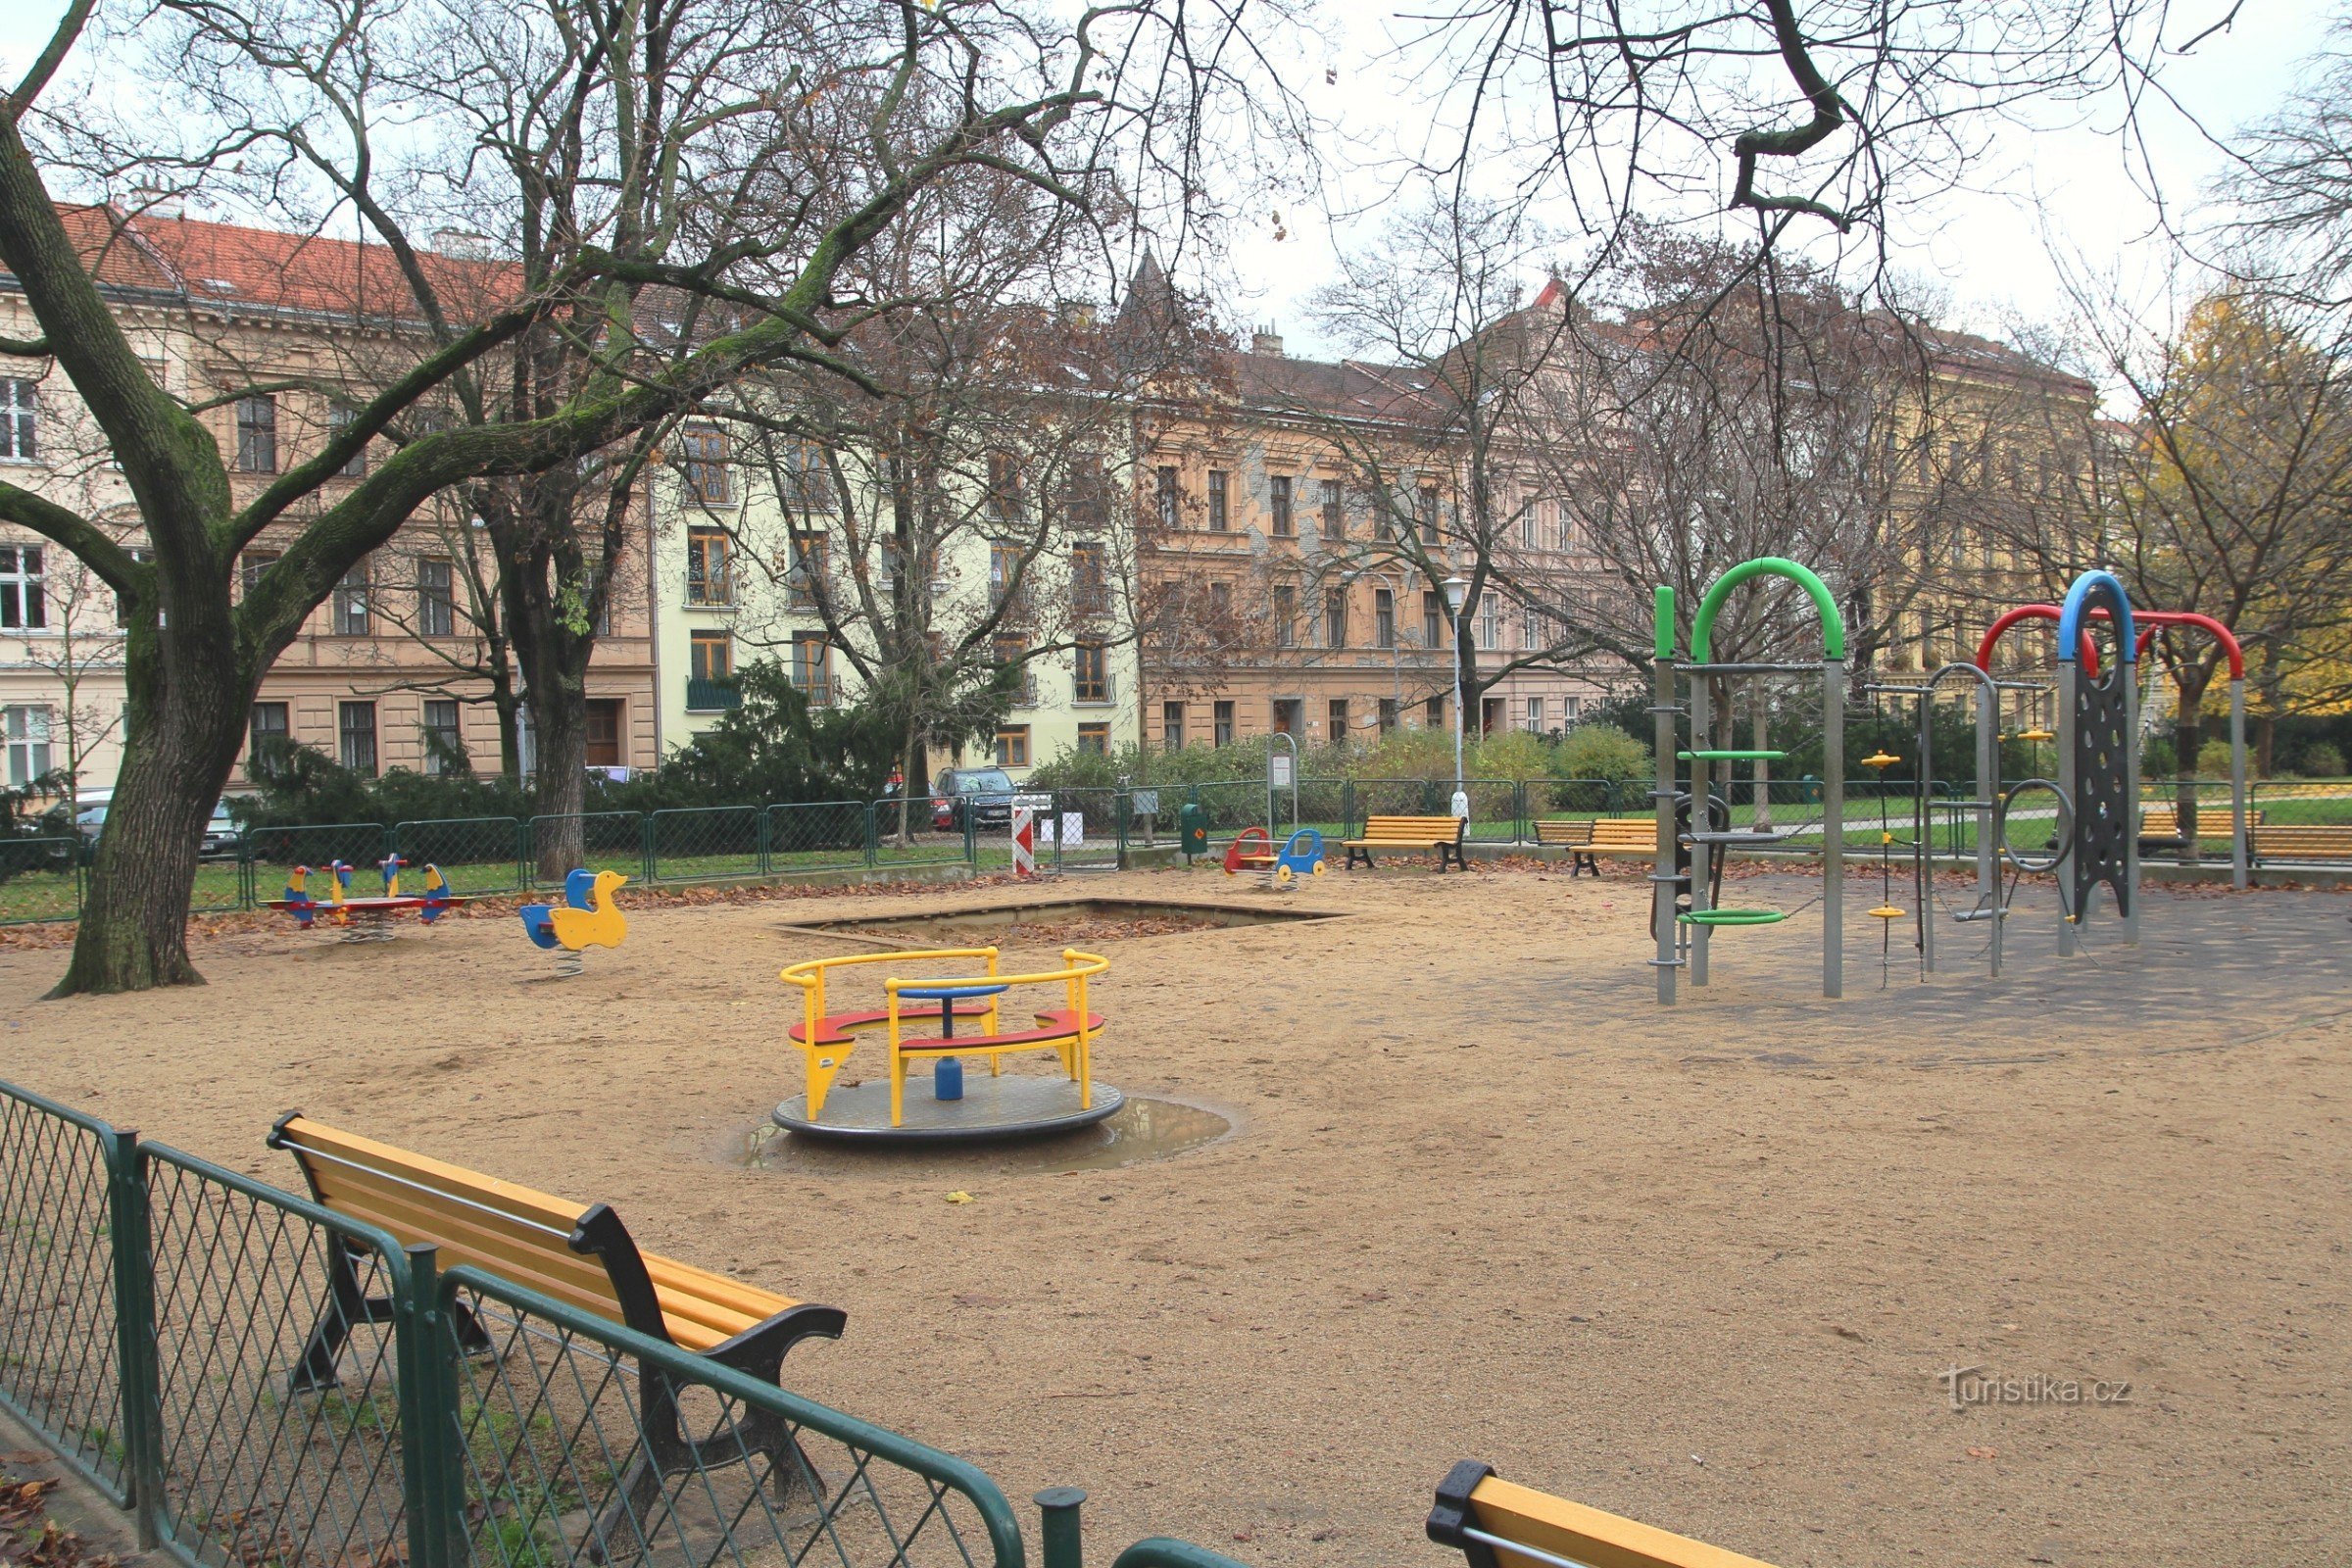 Sân chơi trẻ em ở phía bắc của công viên